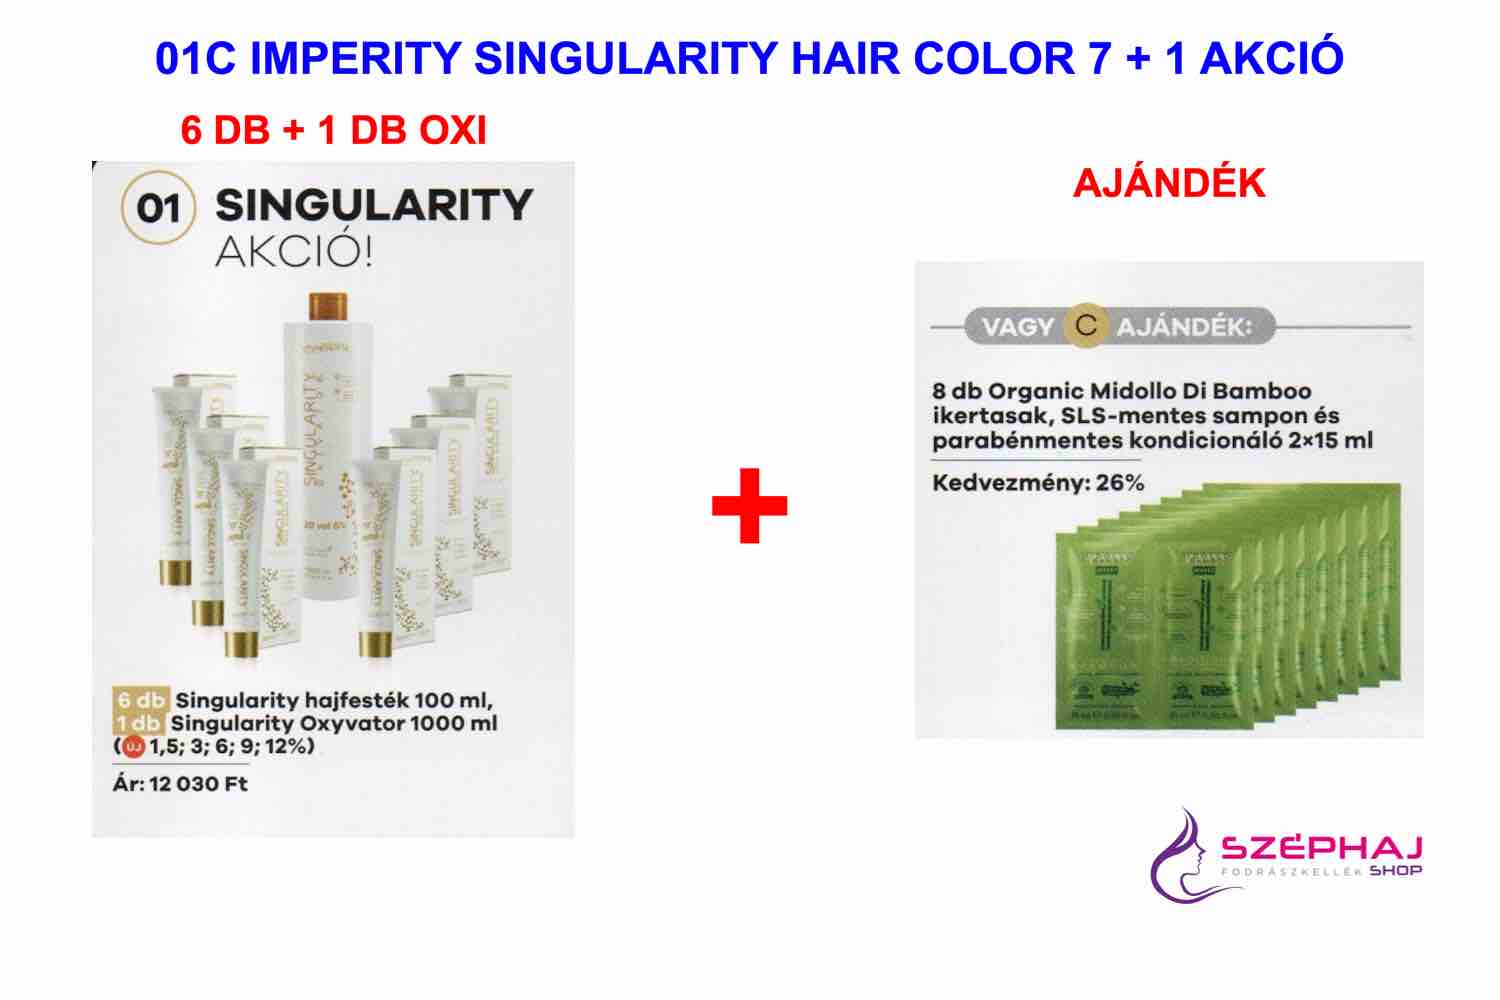 01C IMPERITY Singularity Hair Color Cream 100 ml 6+ AKCIÓ